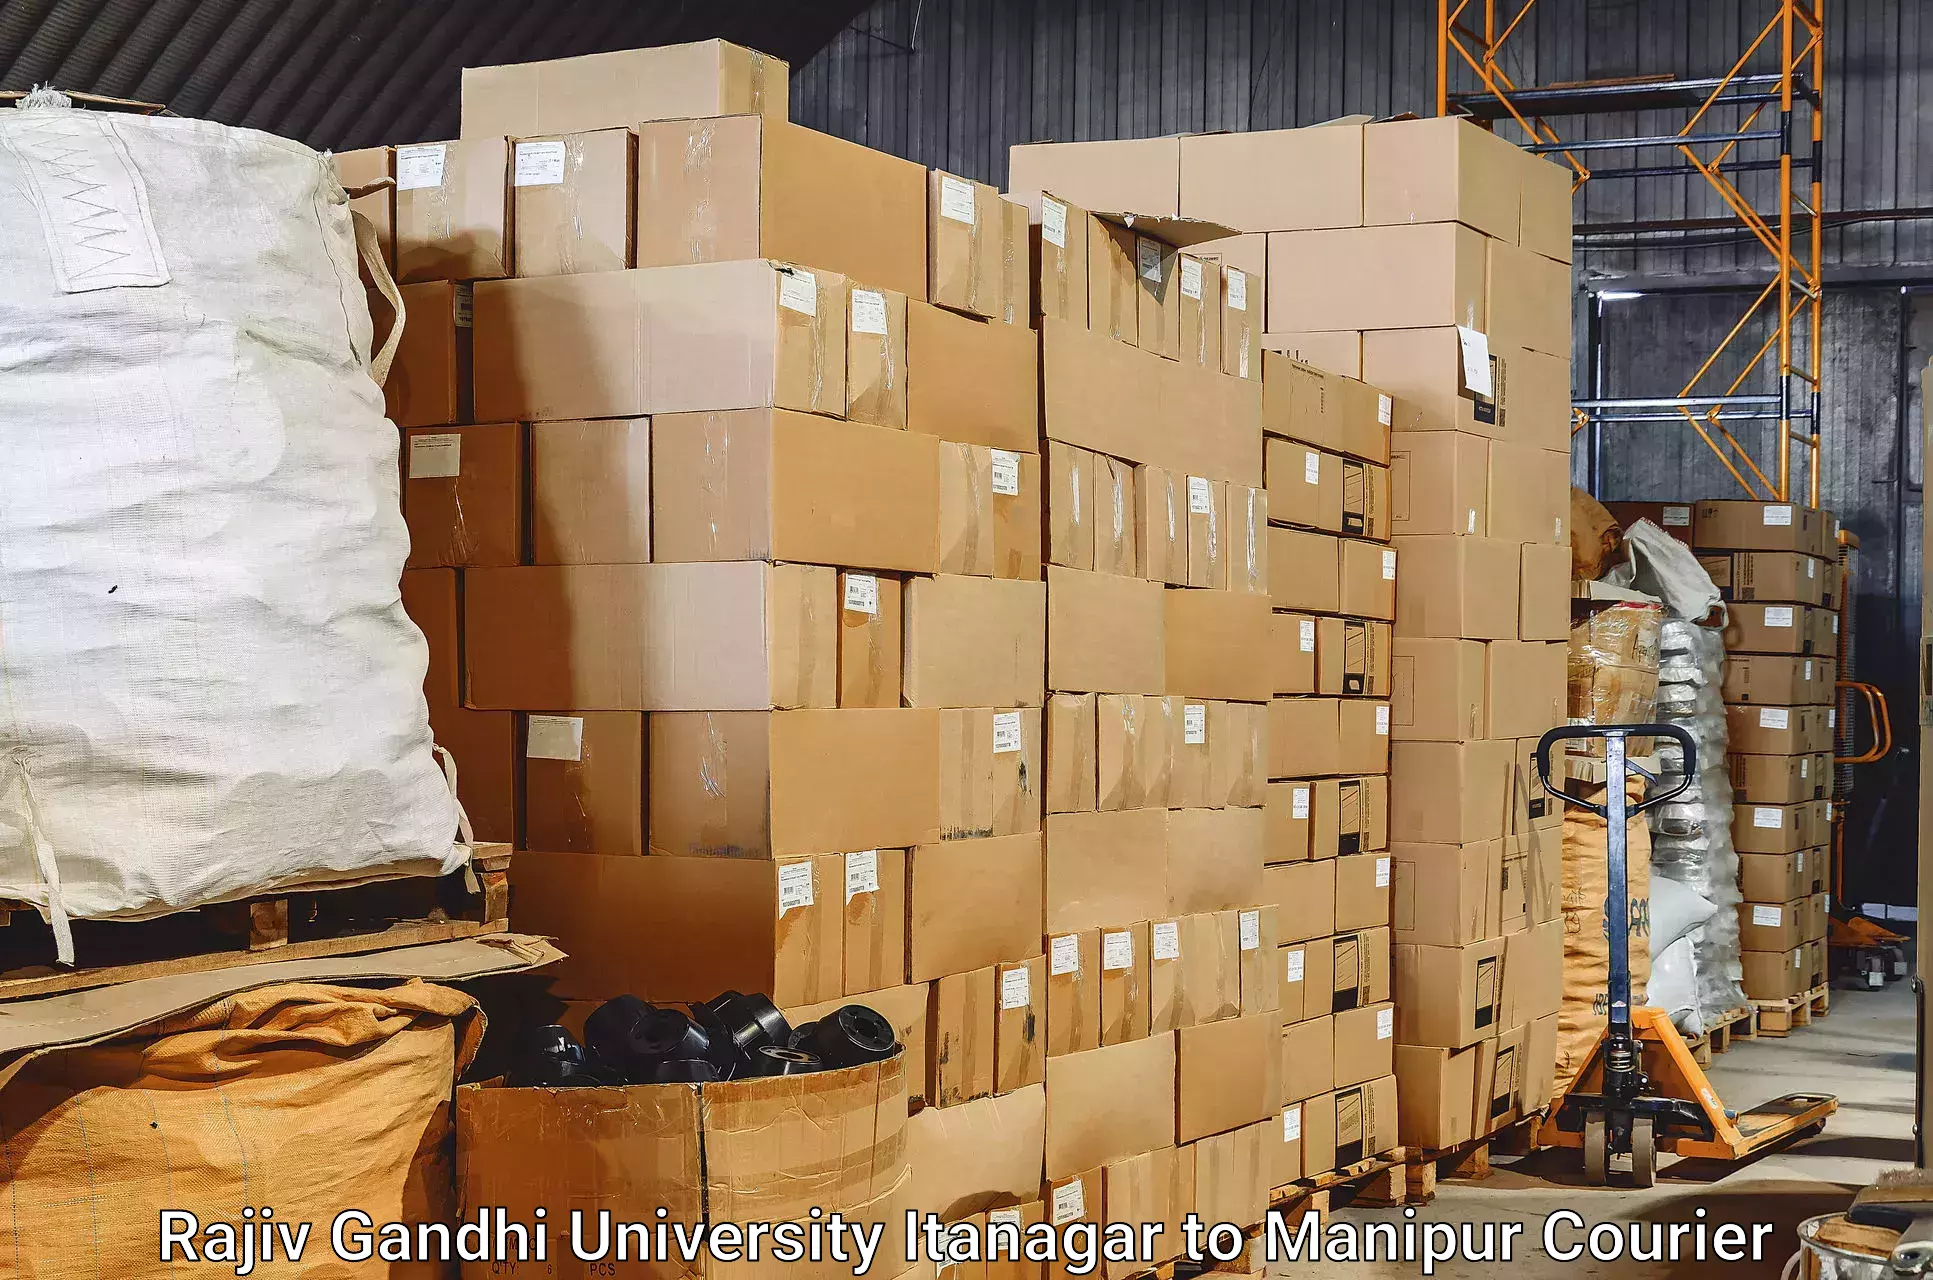 Baggage shipping experts Rajiv Gandhi University Itanagar to Thoubal